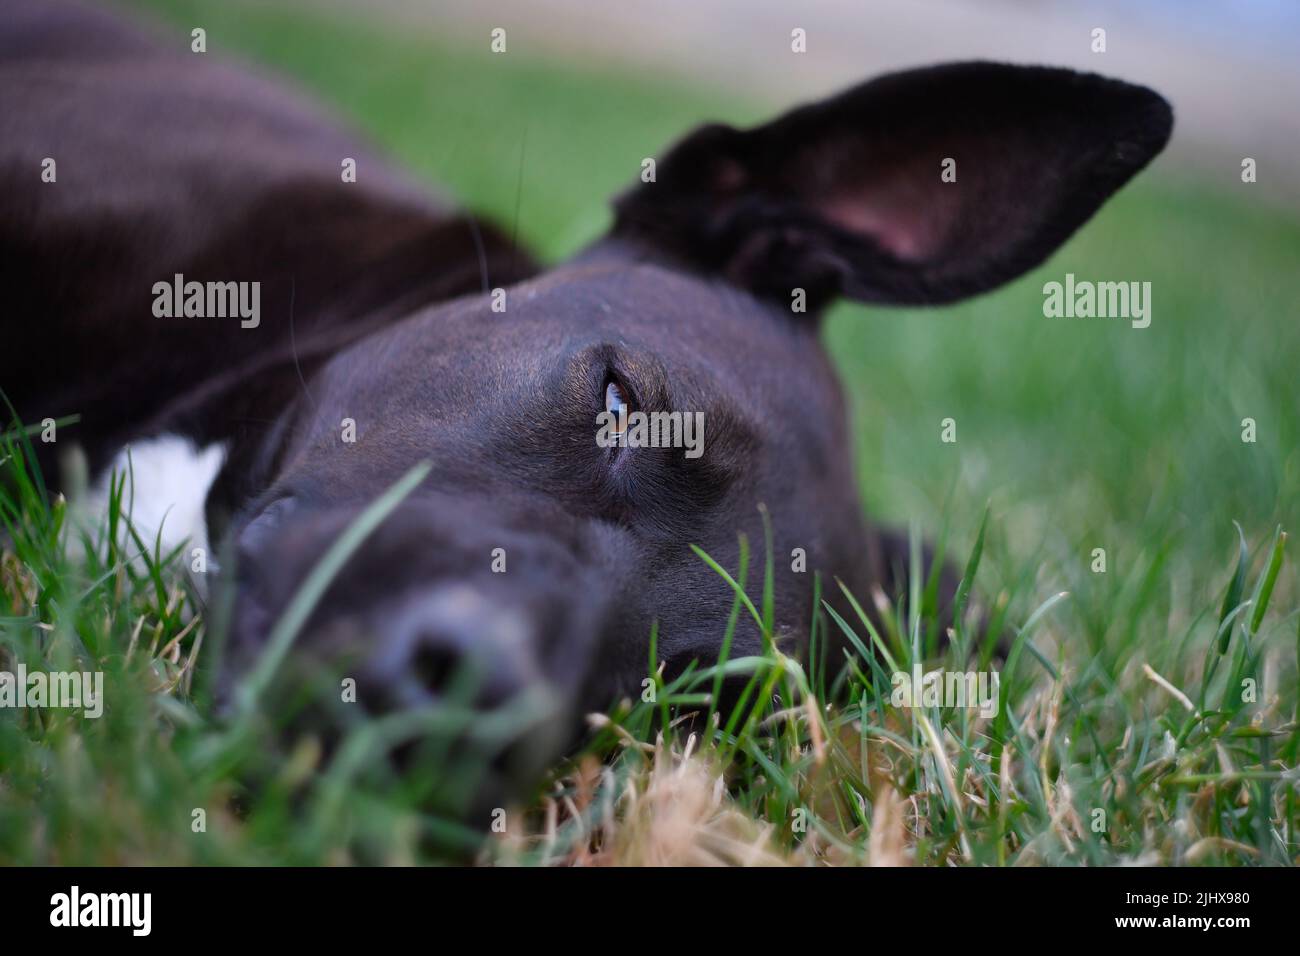 Fekete kutya fekszik a fűben Stock Photo